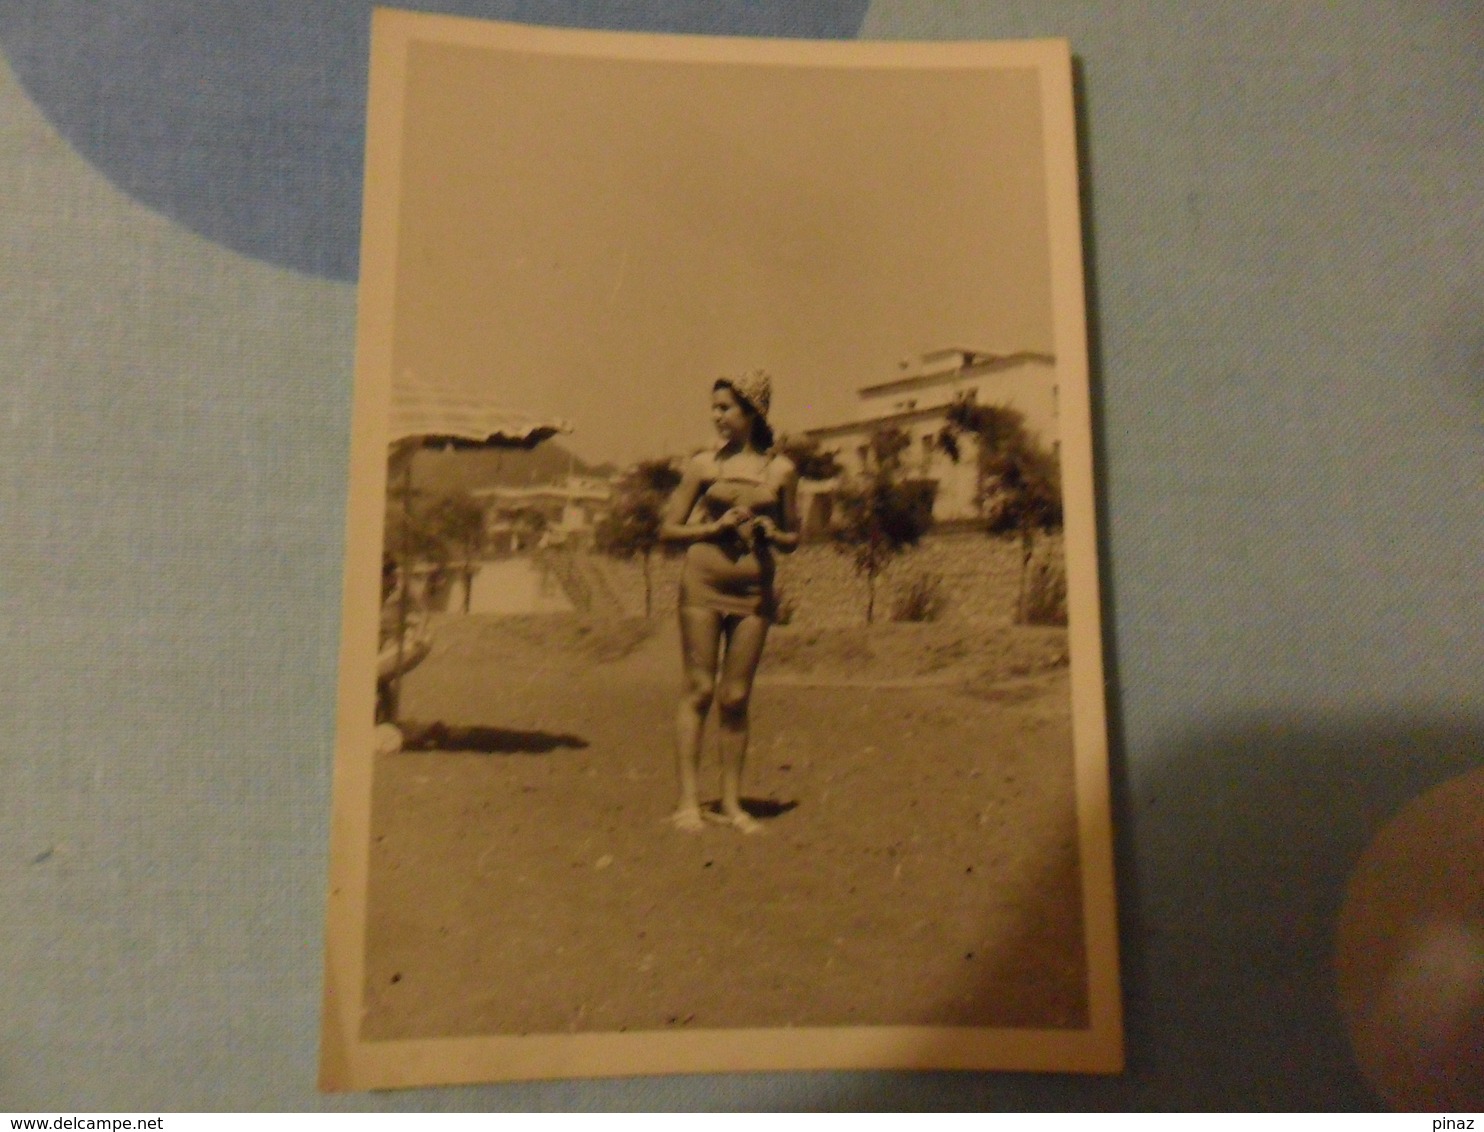 Foto RAGAZZA IN COSTUME 1959 - Pin-ups